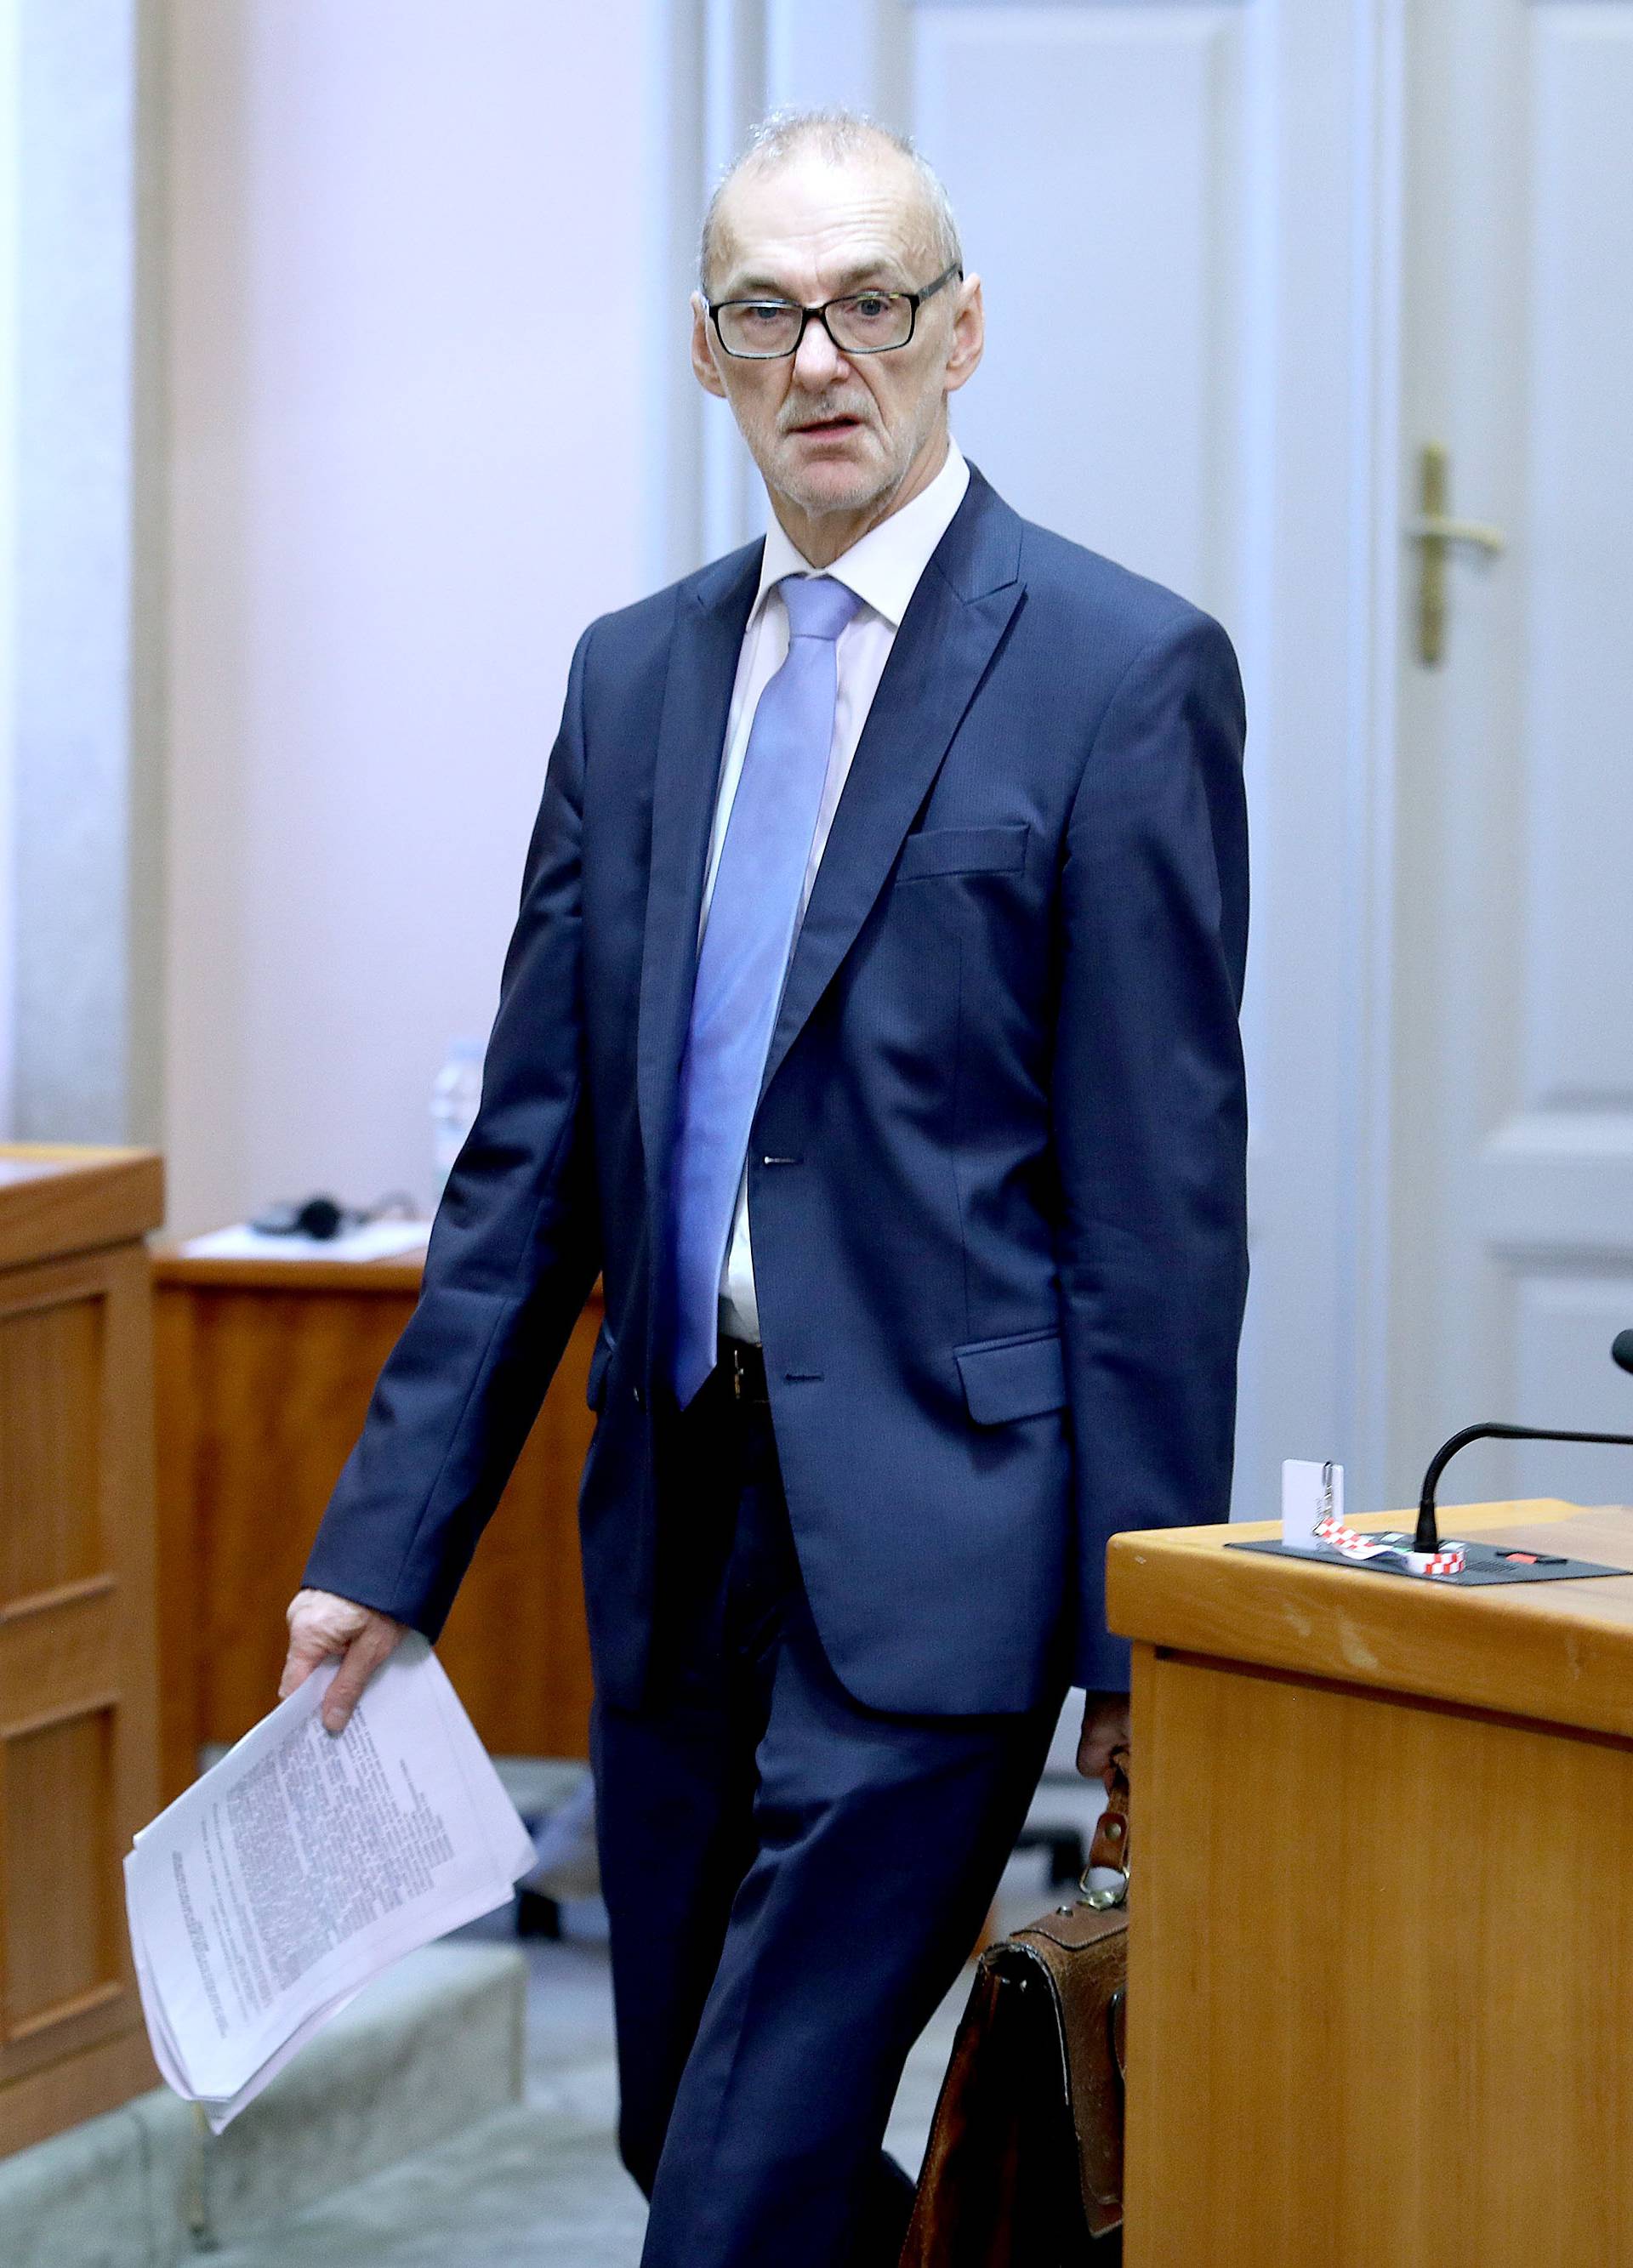 Odlučeno je: Jelenić je izabran za glavnog državnog odvjetnika